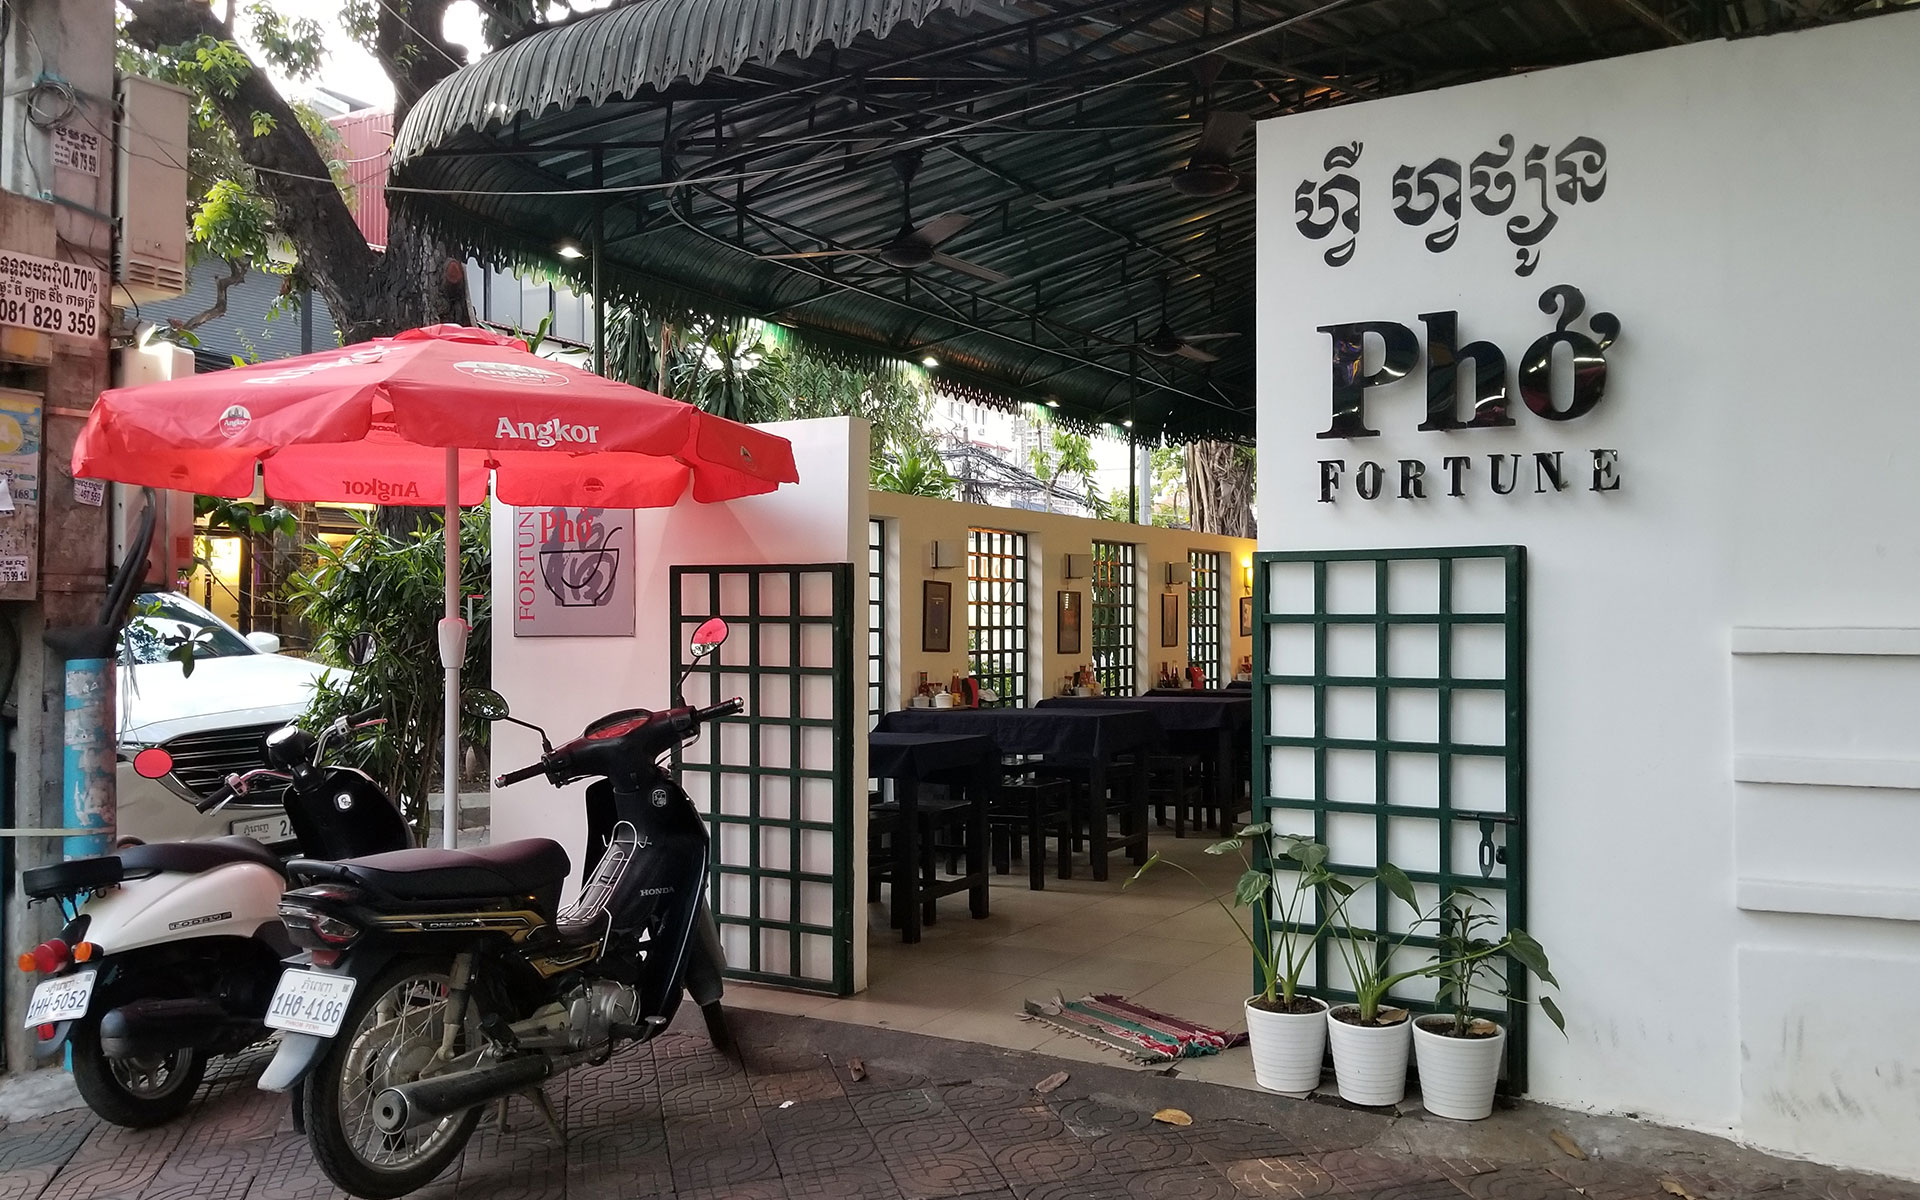 Fortune Pho - Vietnamese Restaurant